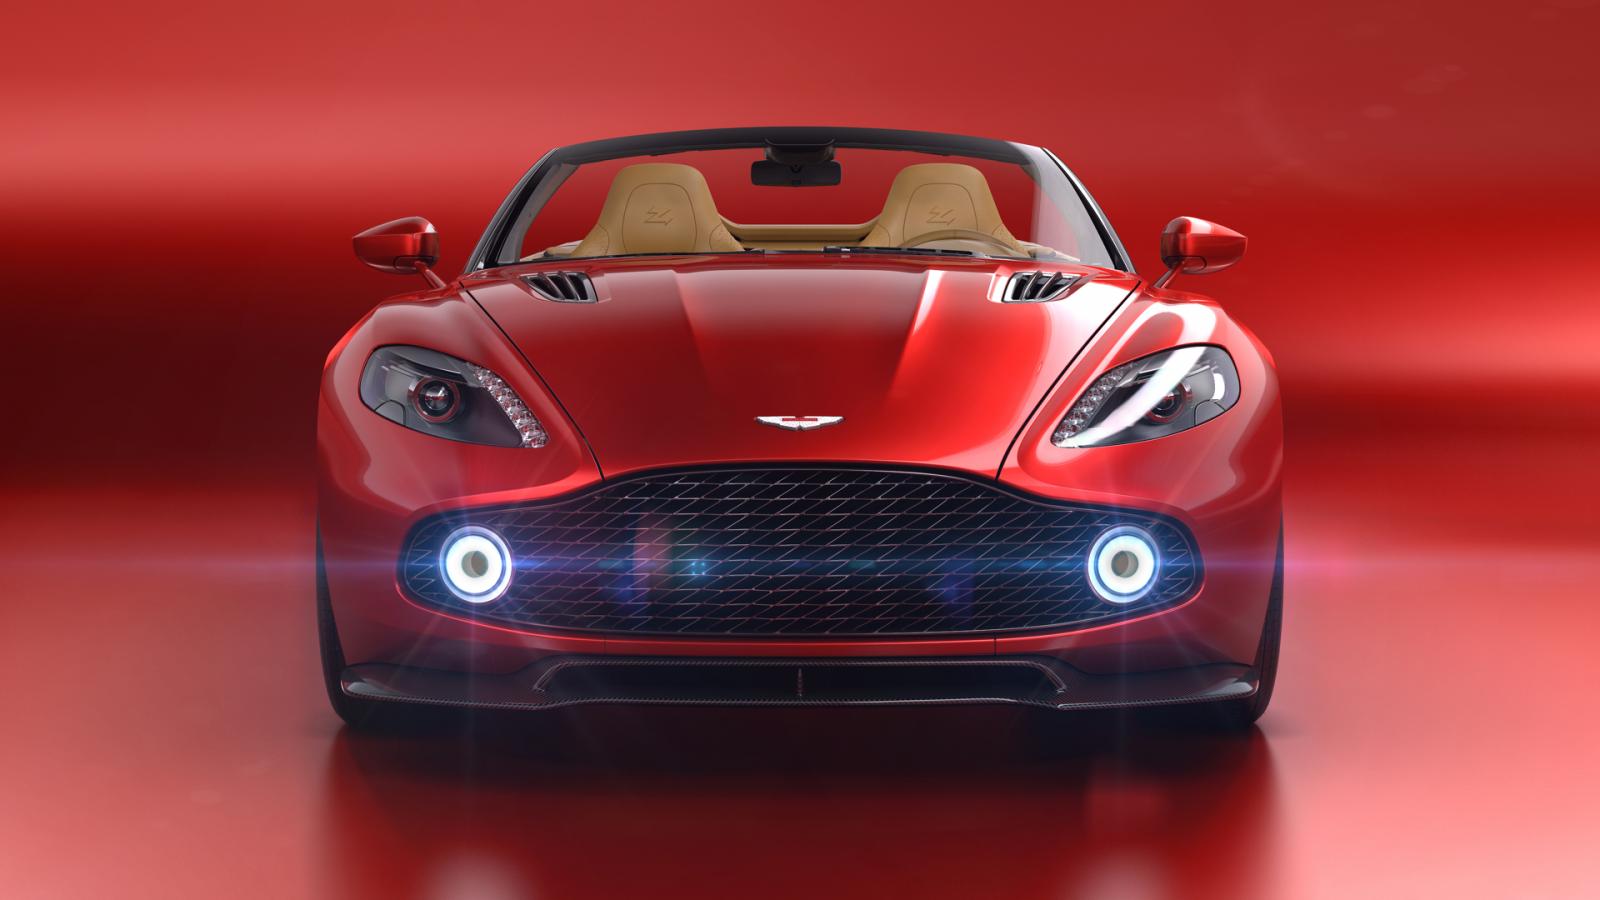 Aston Martin Vanquish Zagato Volante được trang bị cụm đèn sương mù hình tròn nằm trong lưới tản nhiệt trước